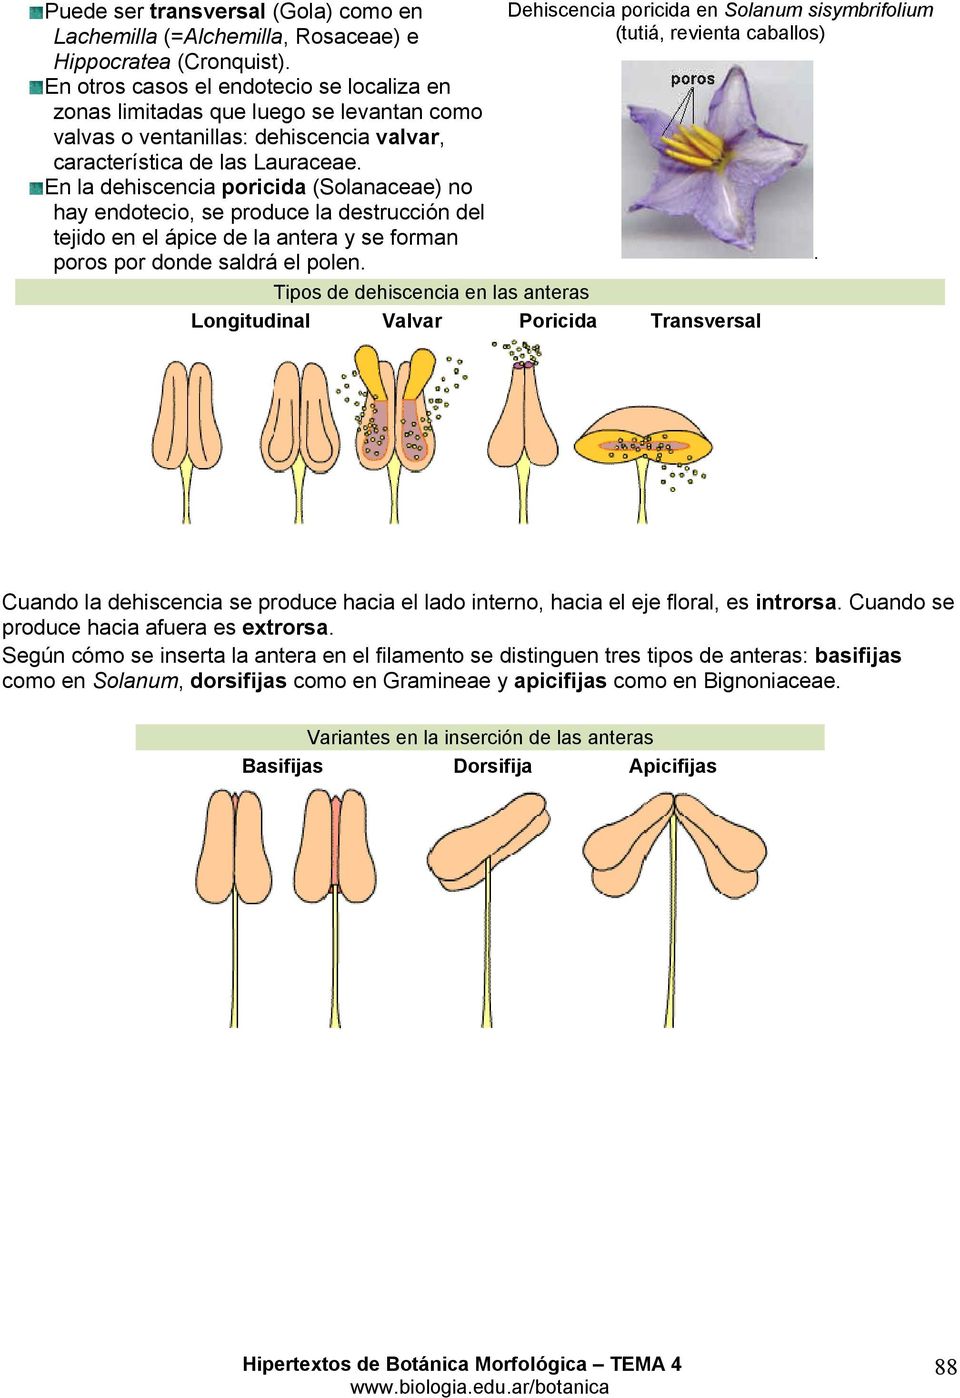 En la dehiscencia poricida (Solanaceae) no hay endotecio, se produce la destrucción del tejido en el ápice de la antera y se forman poros por donde saldrá el polen.